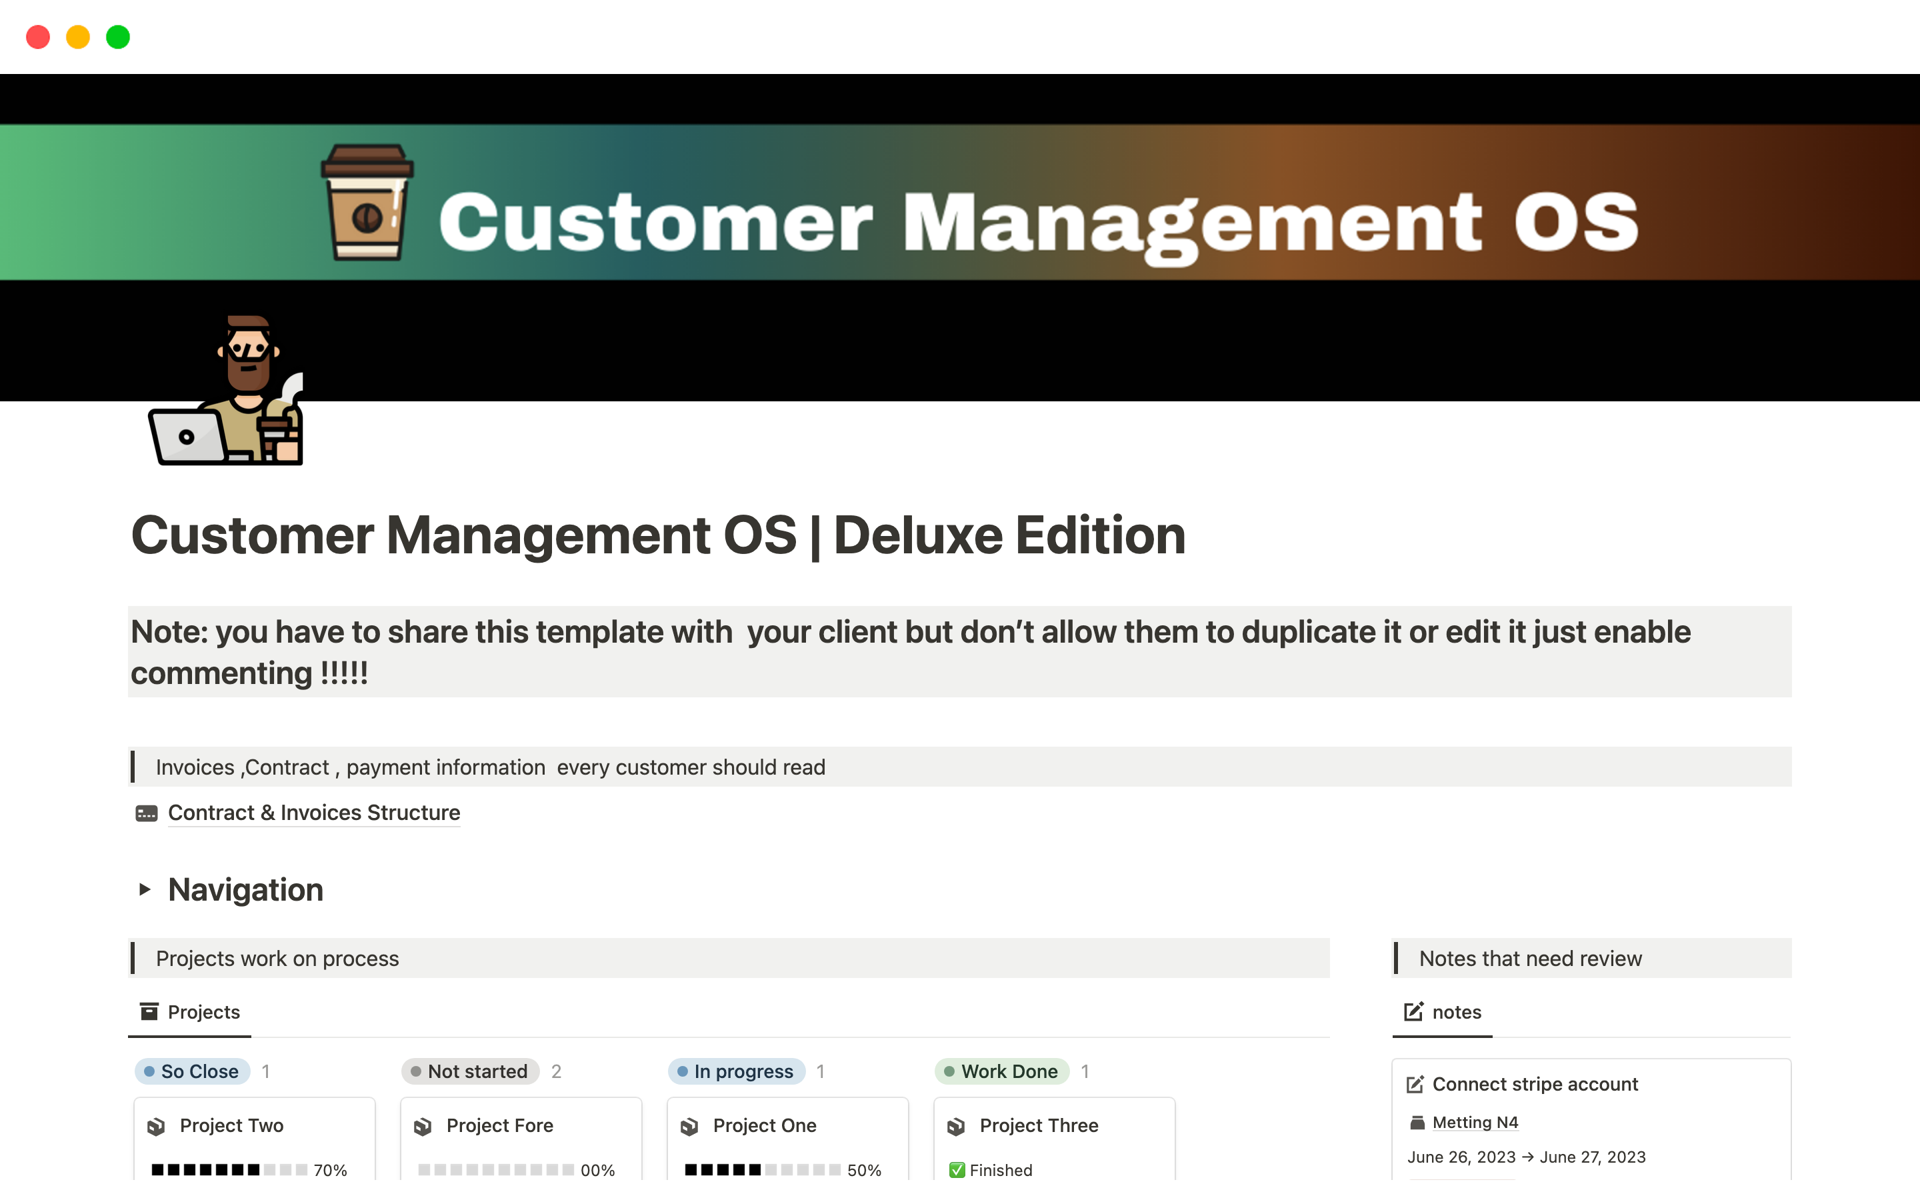 Aperçu du modèle de Customer Management OS | Deluxe Edition